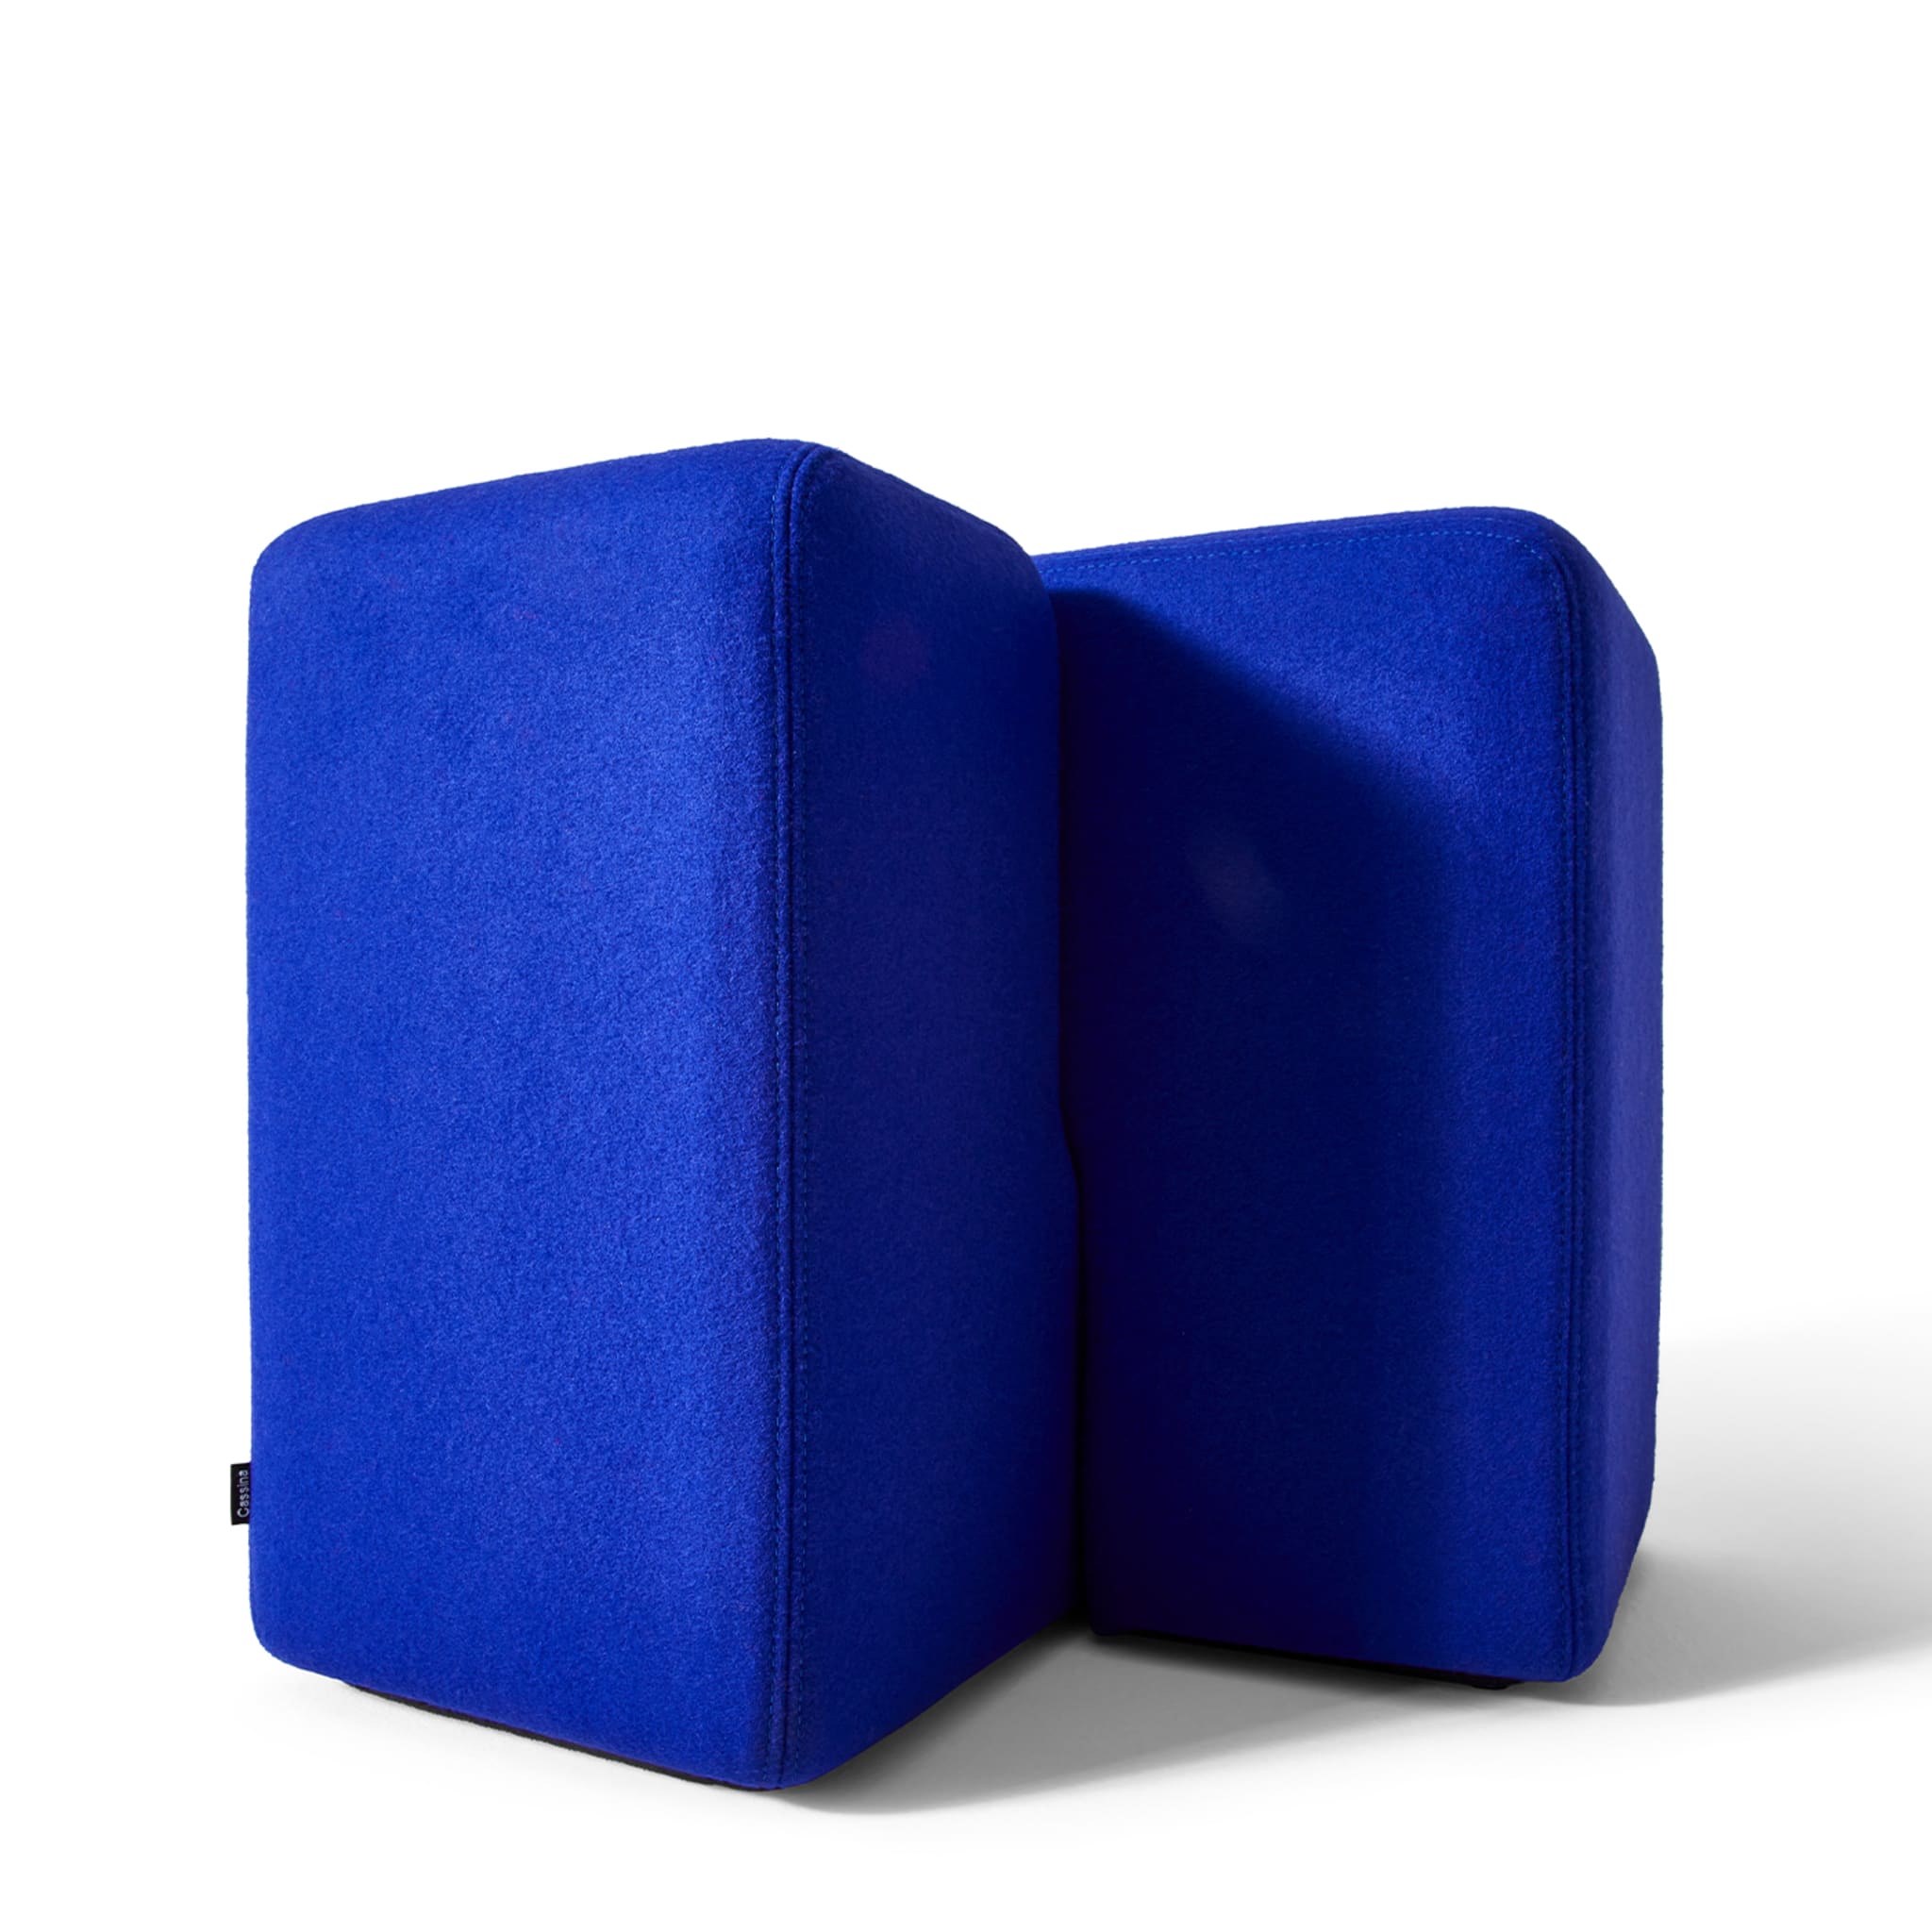 Blue Soft corner ottoman by Linde Freya Tangelder - Alternative view 1